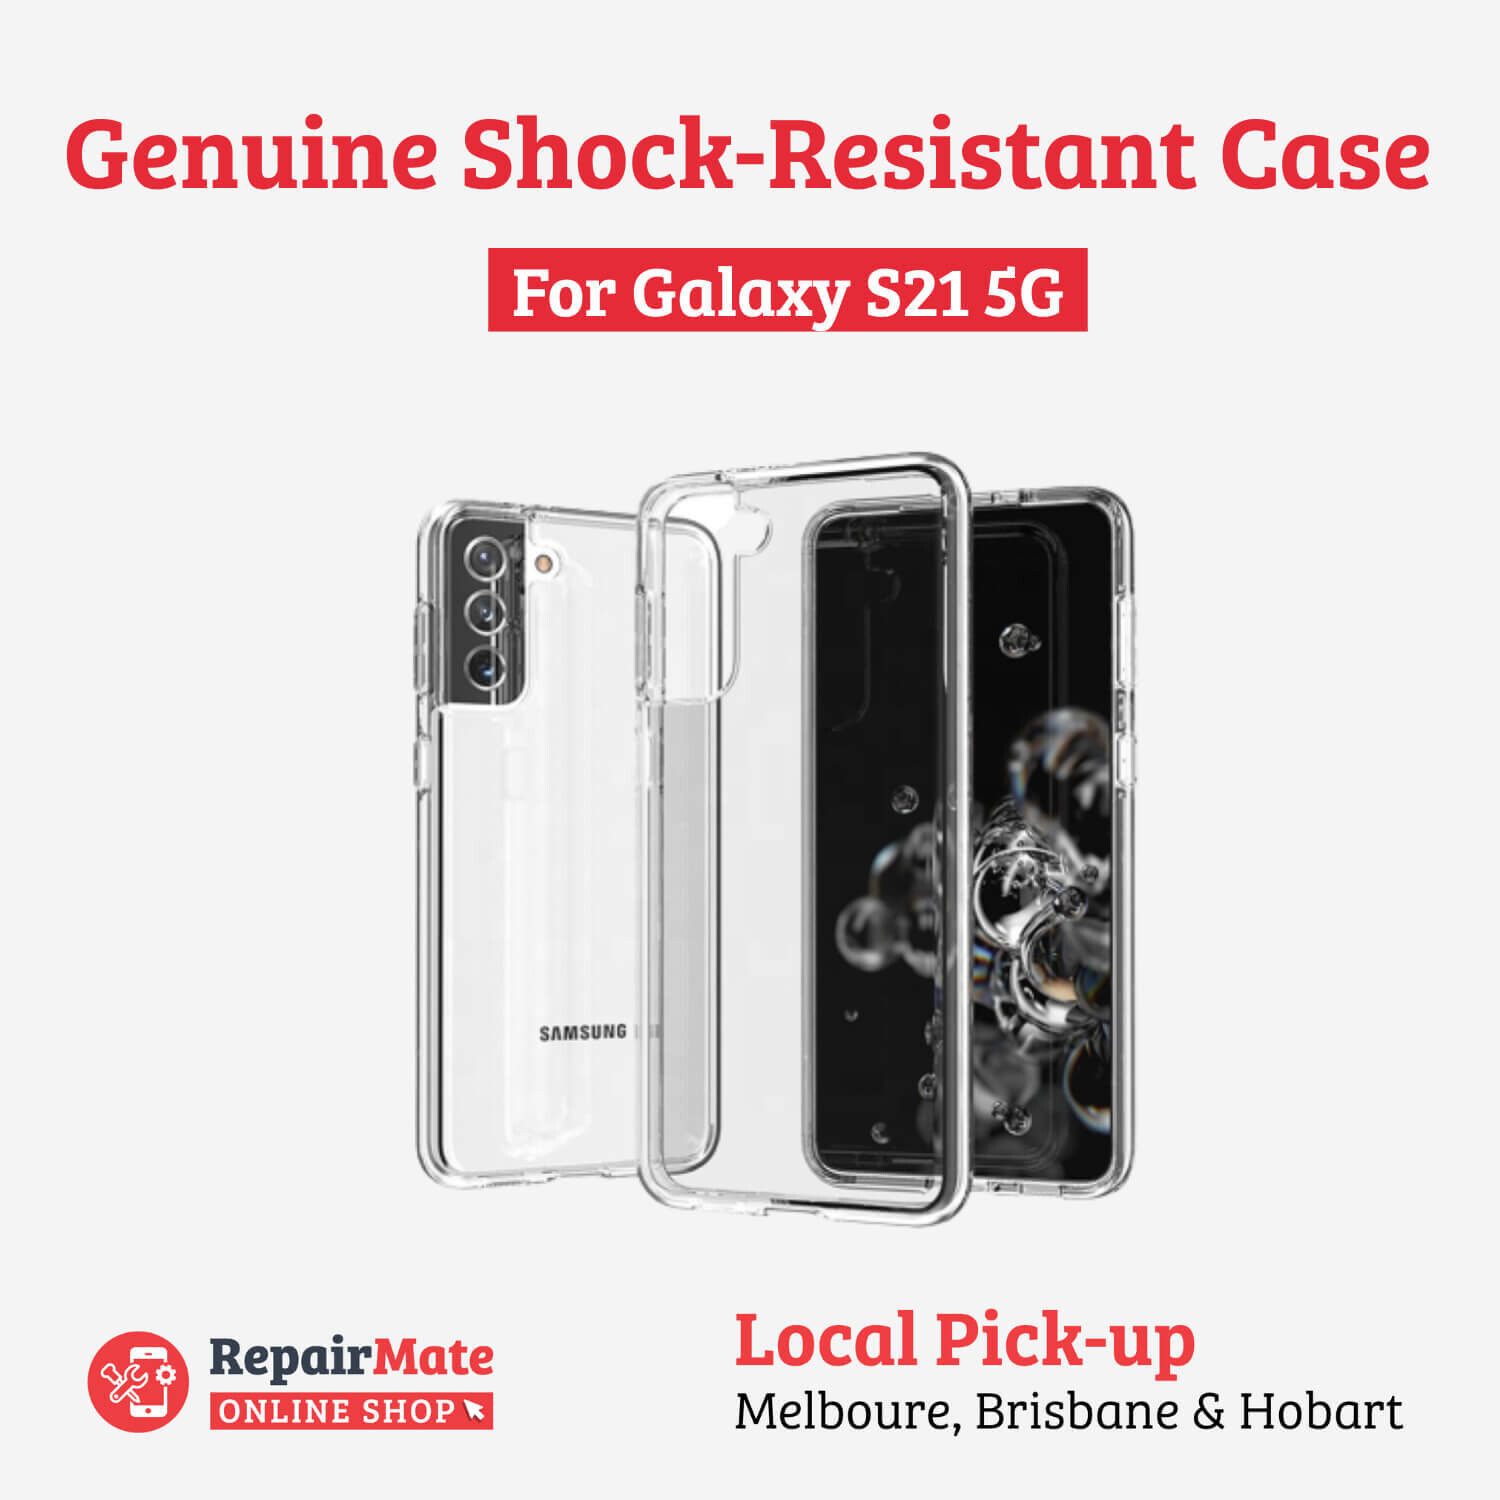 Samsung Galaxy S21 5G Genuine Shock-Resistant Case